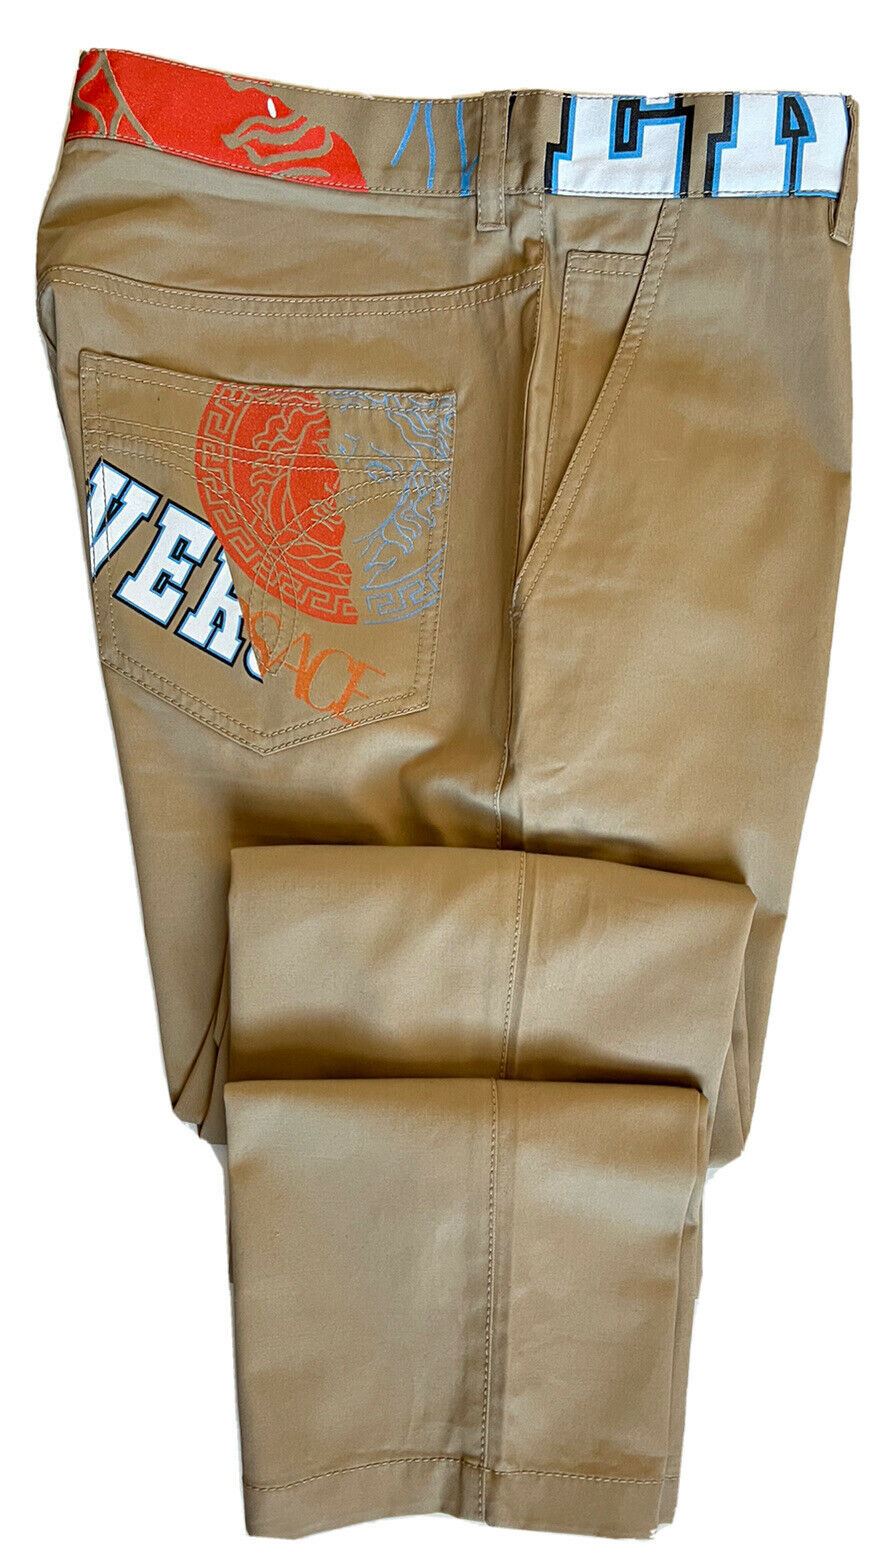 Мужские коричневые брюки Versace NWT 725 долларов США (48 евро), производство Италия A85221